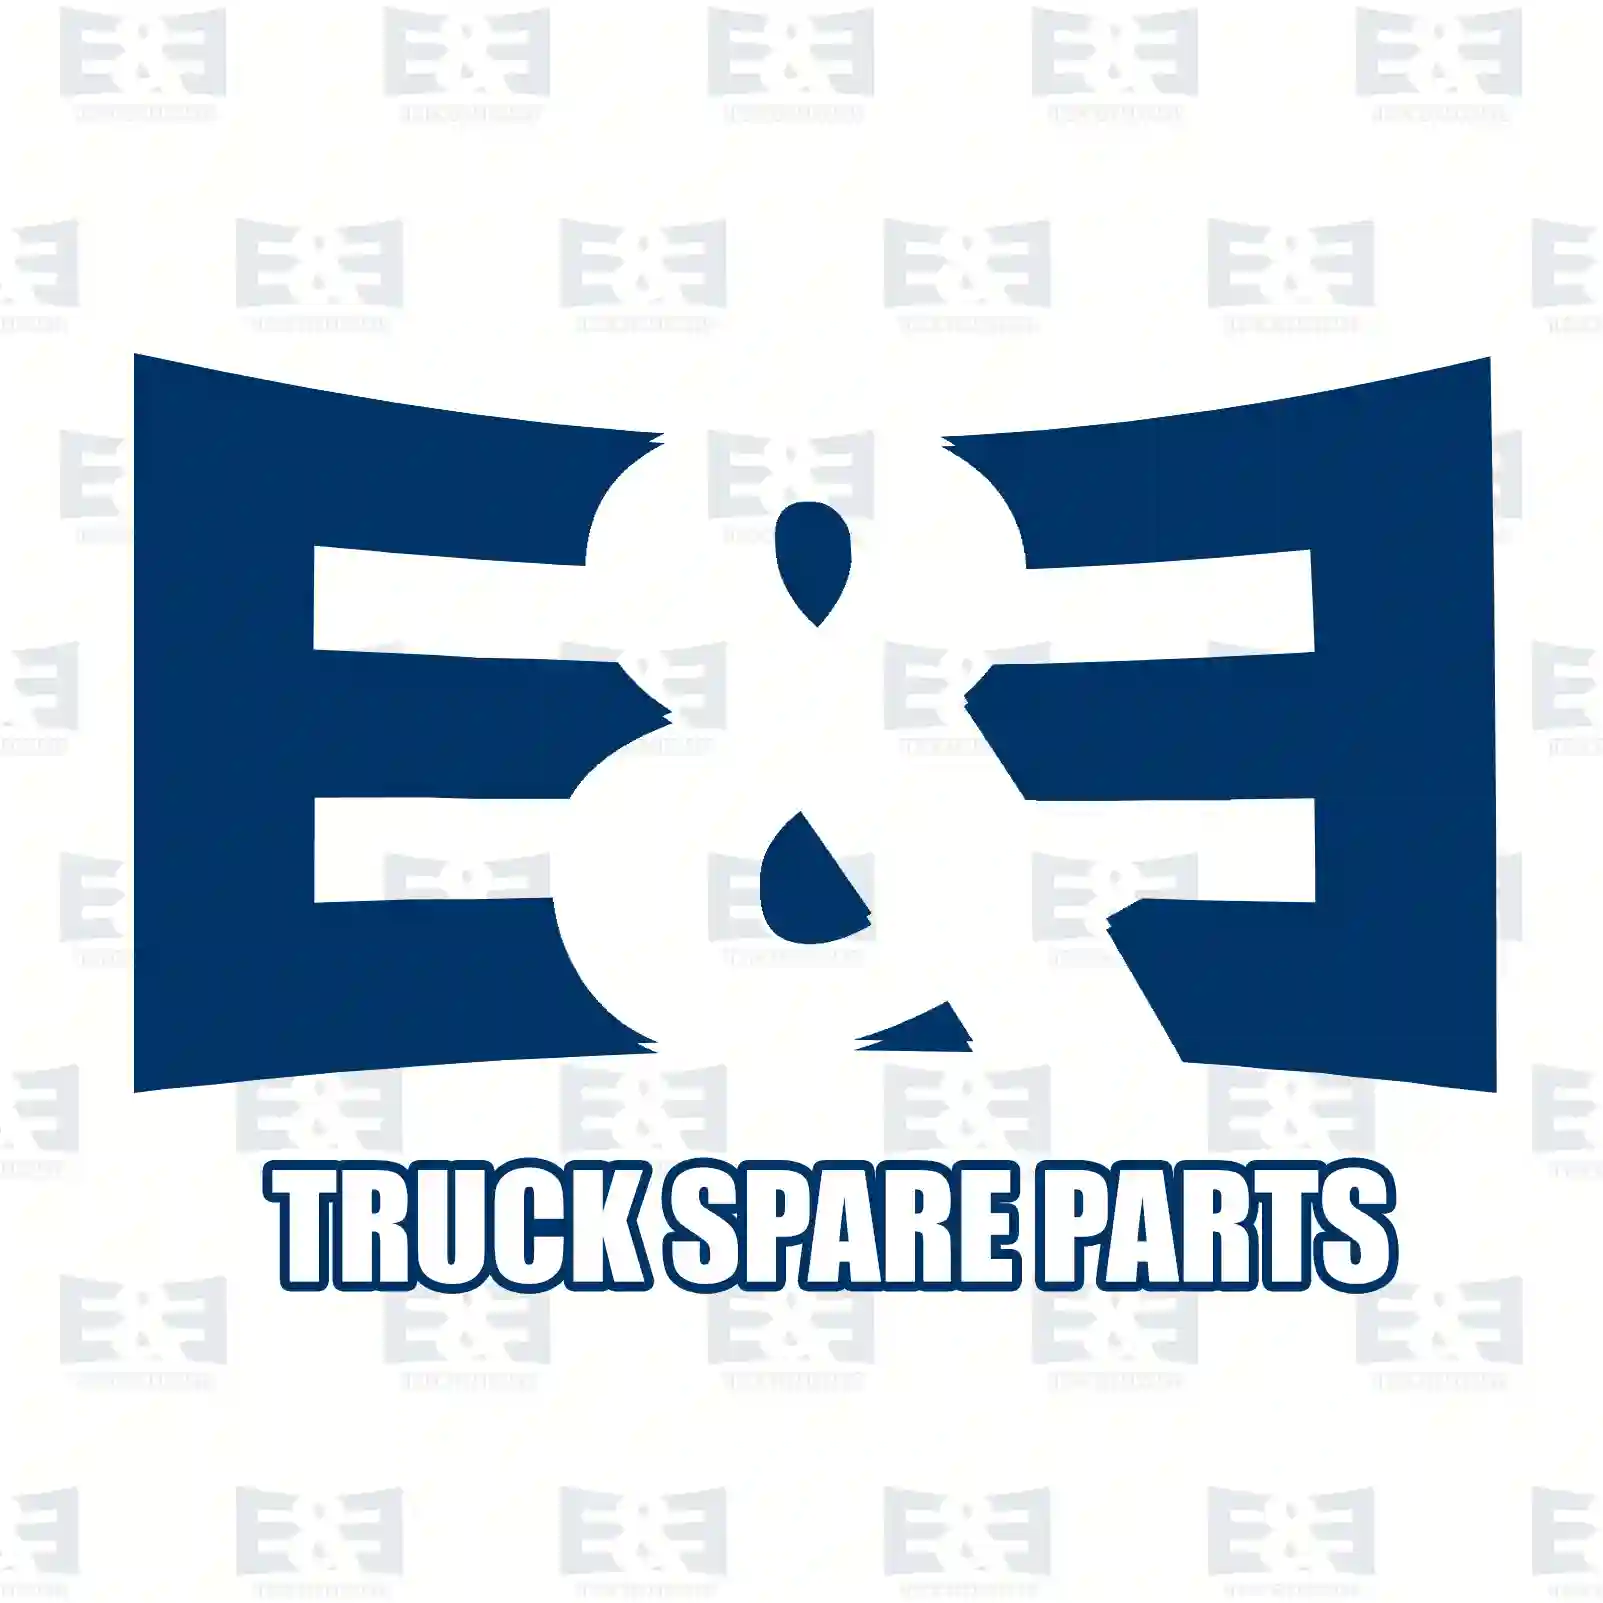 Valve, exhaust gas recirculation, 2E2207044, 9635704380, 1628LQ, 9635704380, 9642226880, 9635704380, 9635704380, 1628LQ, 9635704380, 9642226880, 18117-73J00 ||  2E2207044 E&E Truck Spare Parts | Truck Spare Parts, Auotomotive Spare Parts Valve, exhaust gas recirculation, 2E2207044, 9635704380, 1628LQ, 9635704380, 9642226880, 9635704380, 9635704380, 1628LQ, 9635704380, 9642226880, 18117-73J00 ||  2E2207044 E&E Truck Spare Parts | Truck Spare Parts, Auotomotive Spare Parts